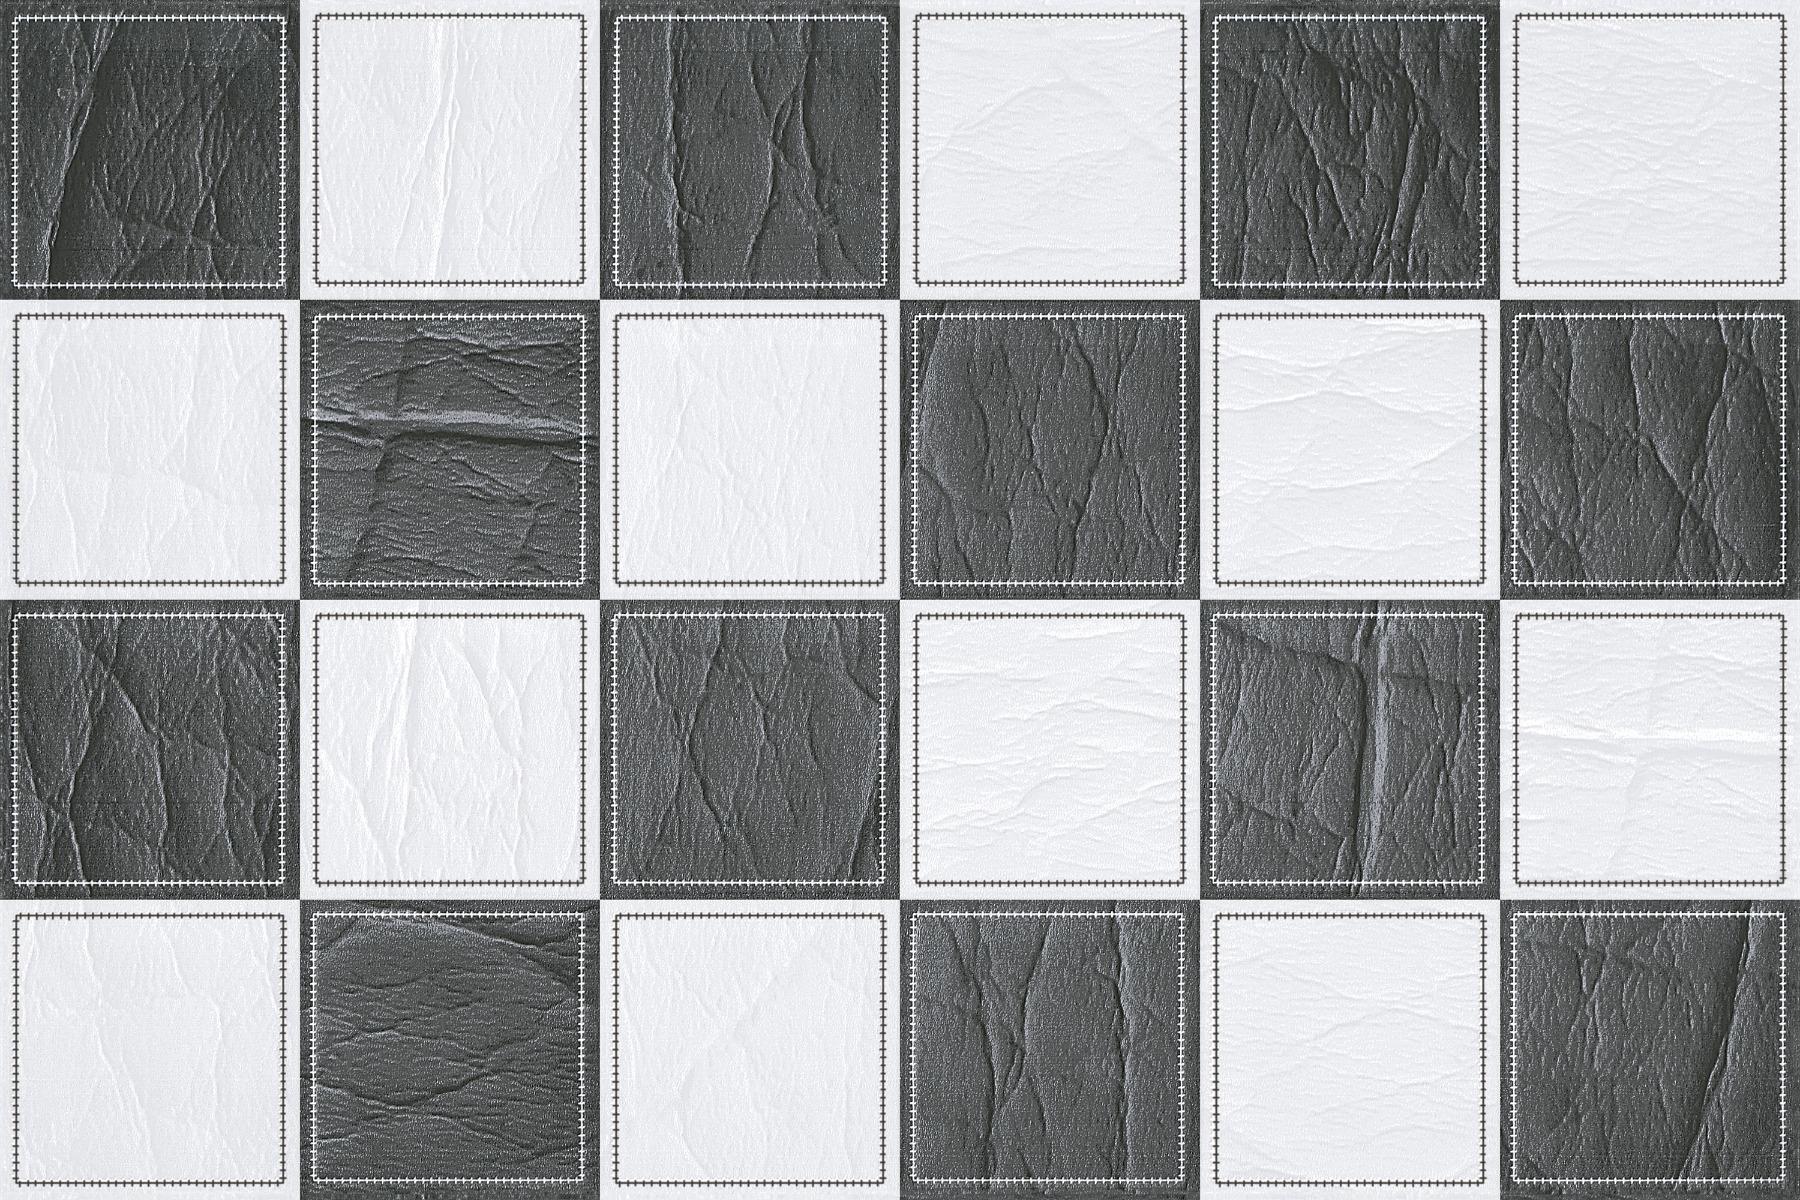 Glossy Tiles for Bathroom Tiles, Kitchen Tiles, Balcony Tiles